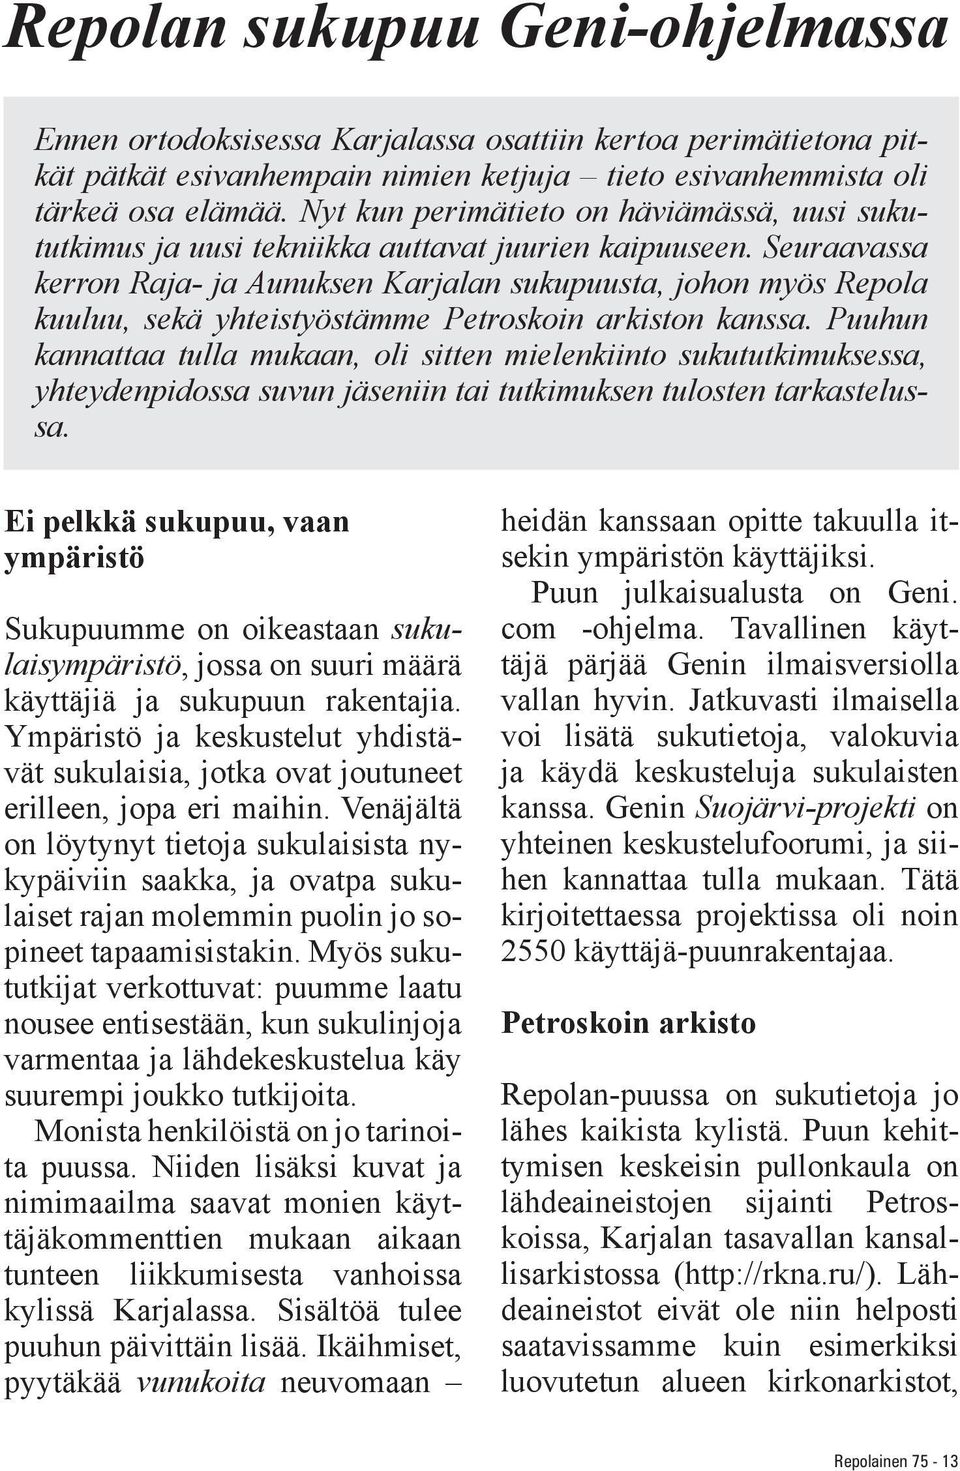 Seuraavassa kerron Raja- ja Aunuksen Karjalan sukupuusta, johon myös Repola kuuluu, sekä yhteistyöstämme Petroskoin arkiston kanssa.